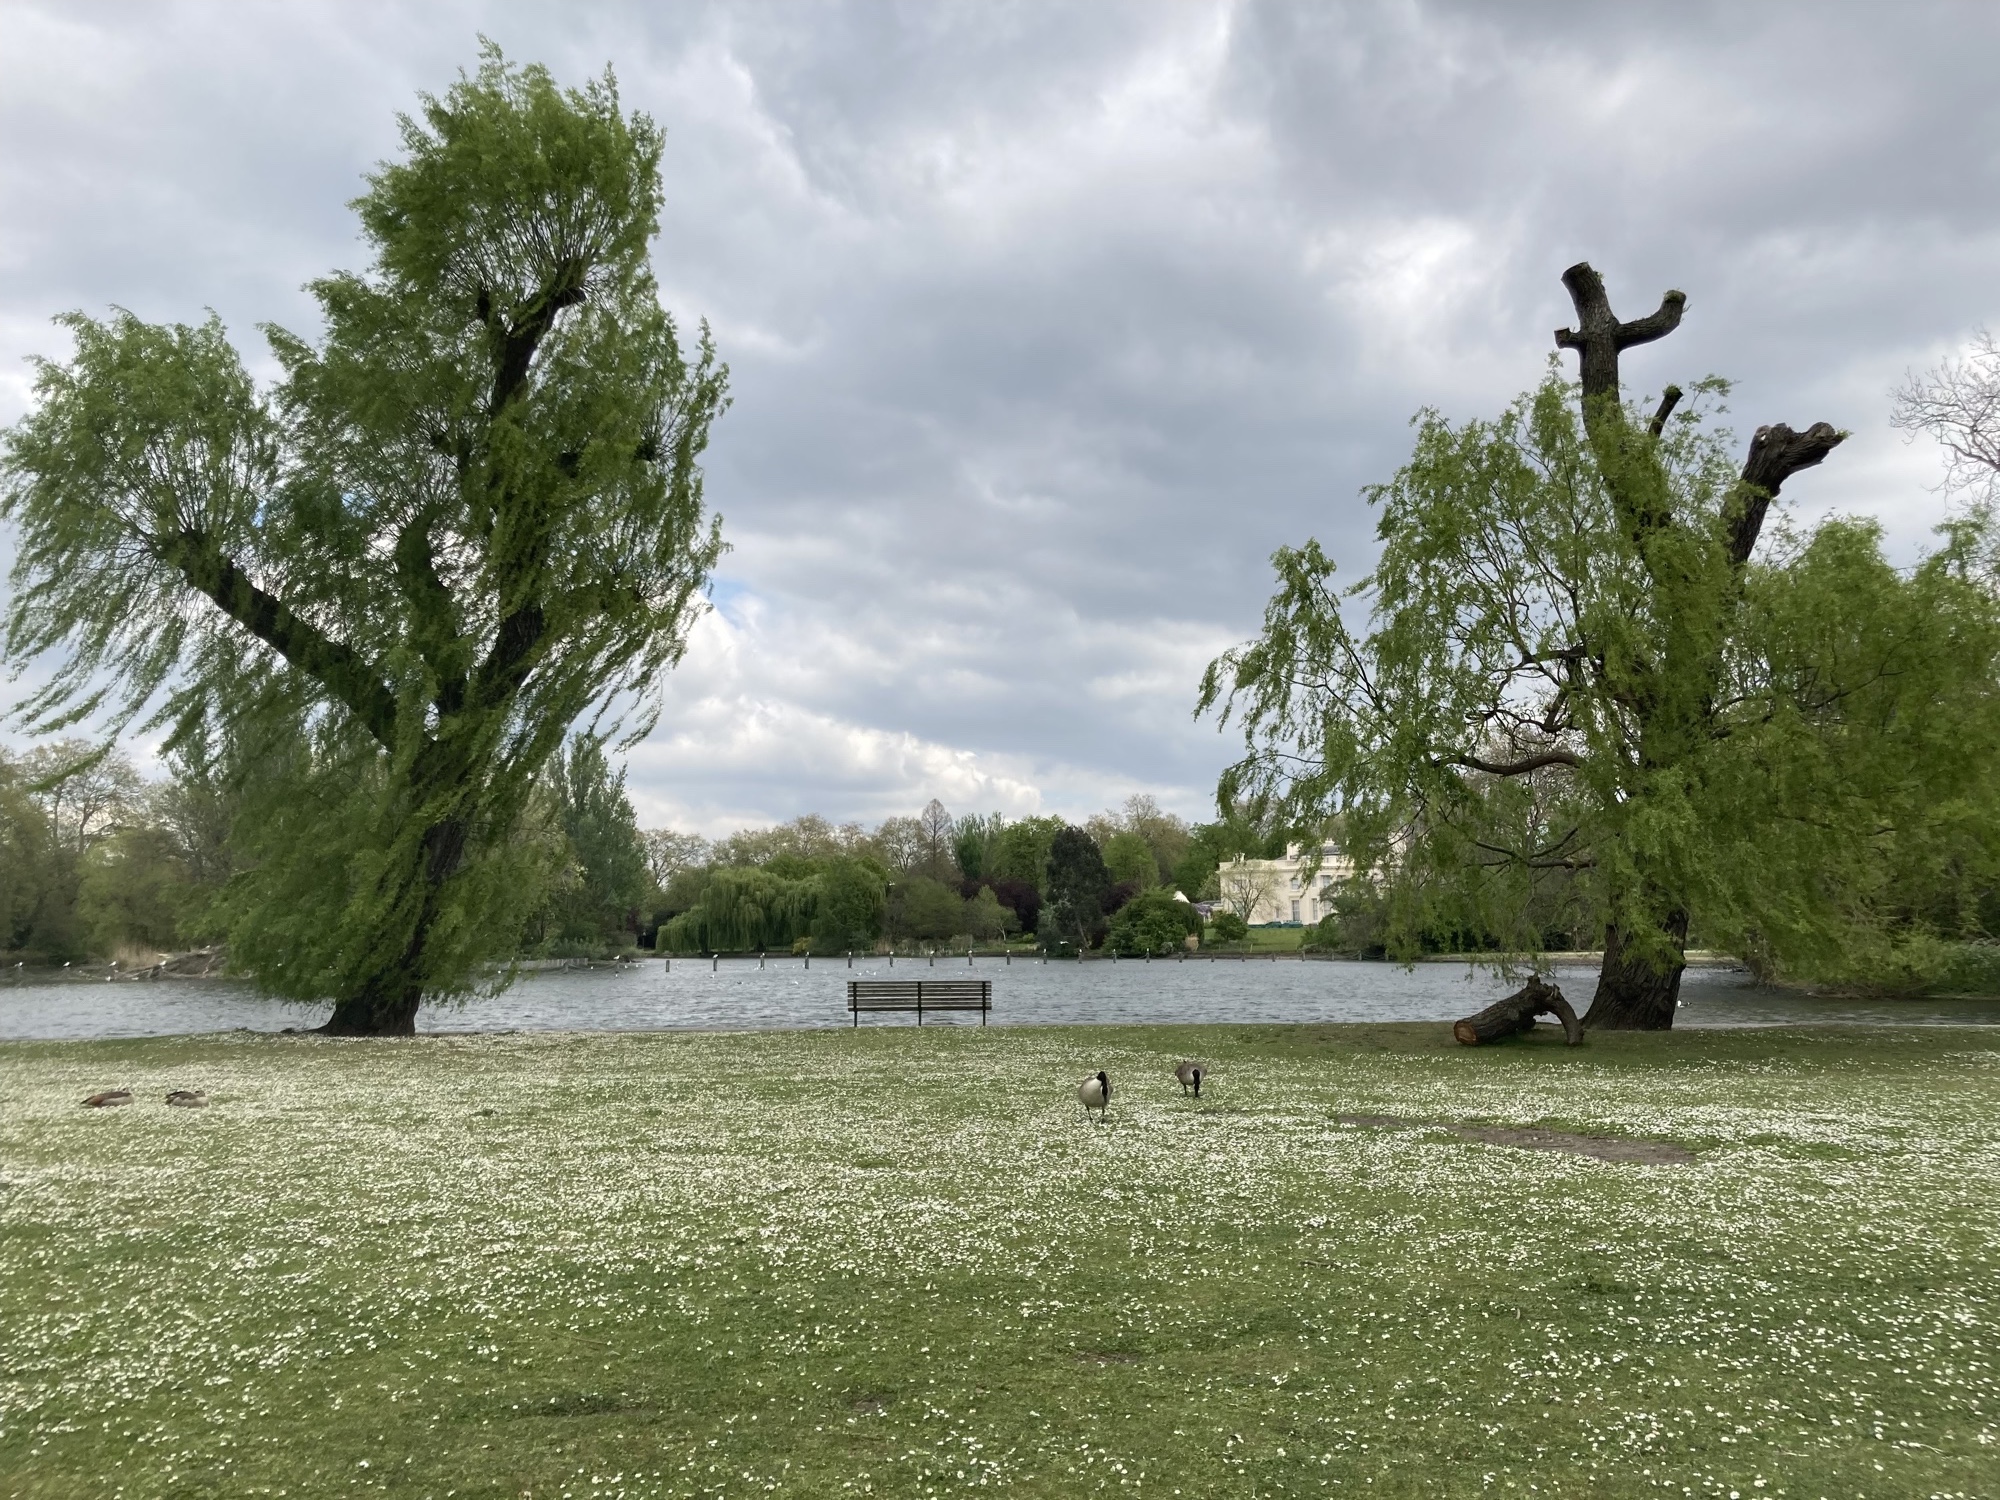 Blick auf den See im Regent's Park, links und rechts eine vom Wind verwehte Weide, mittig eine Sitzbank, im Mittelgrund zwei Gänse auf der Wiese